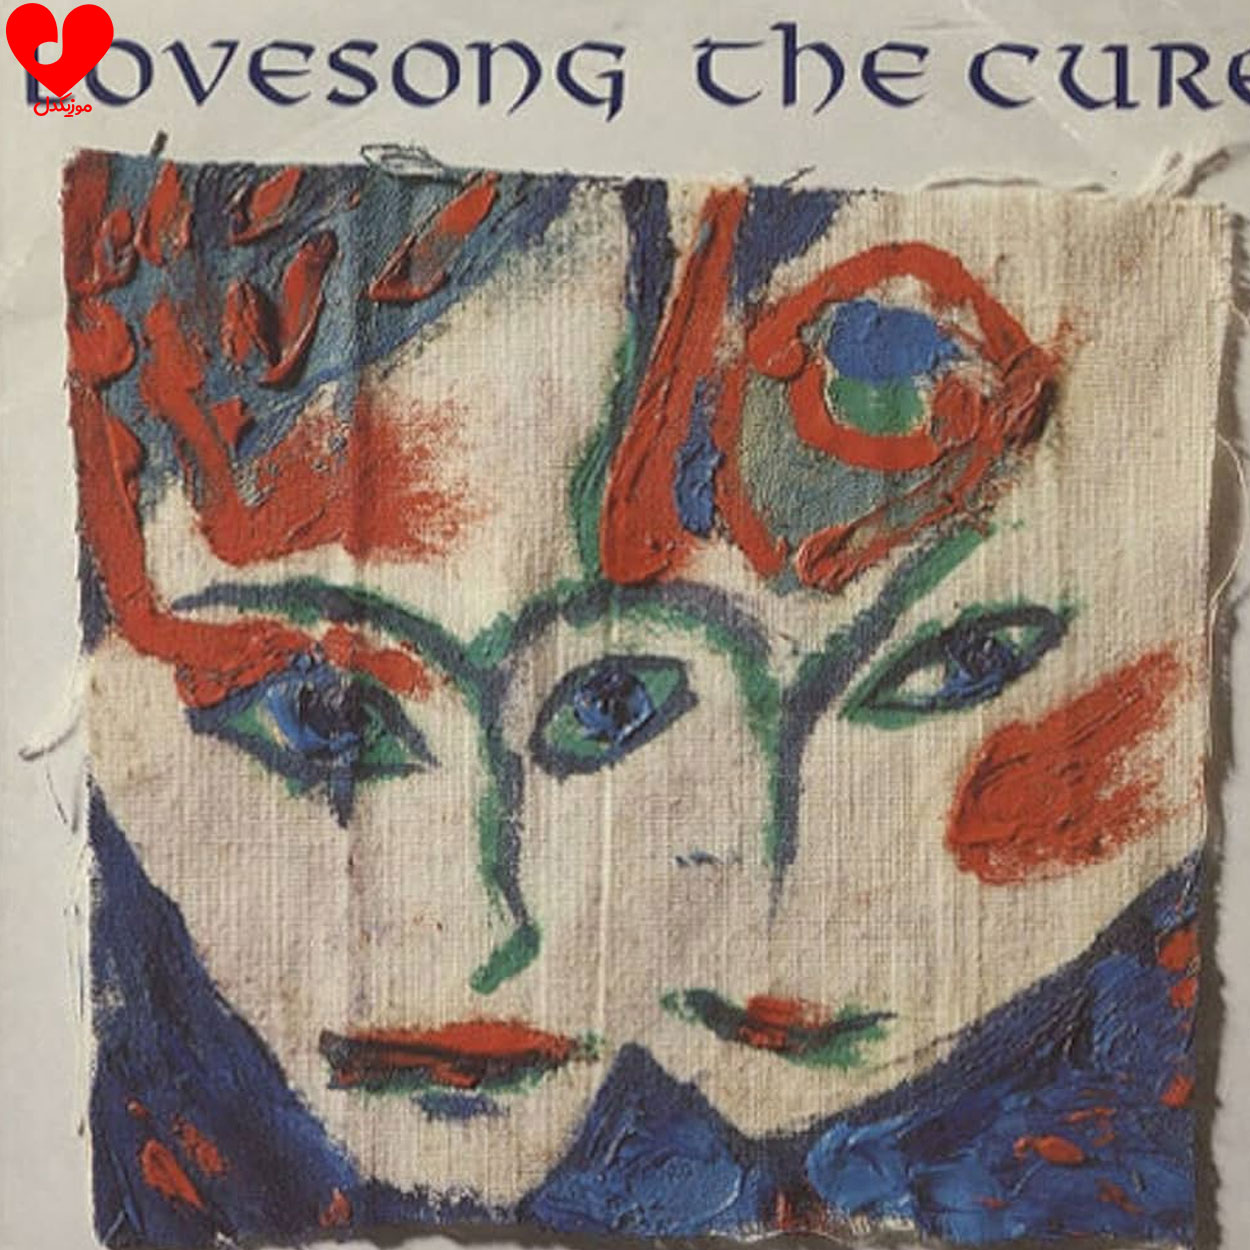 دانلود آهنگ Lovesong از The Cure + ترجمه فارسی